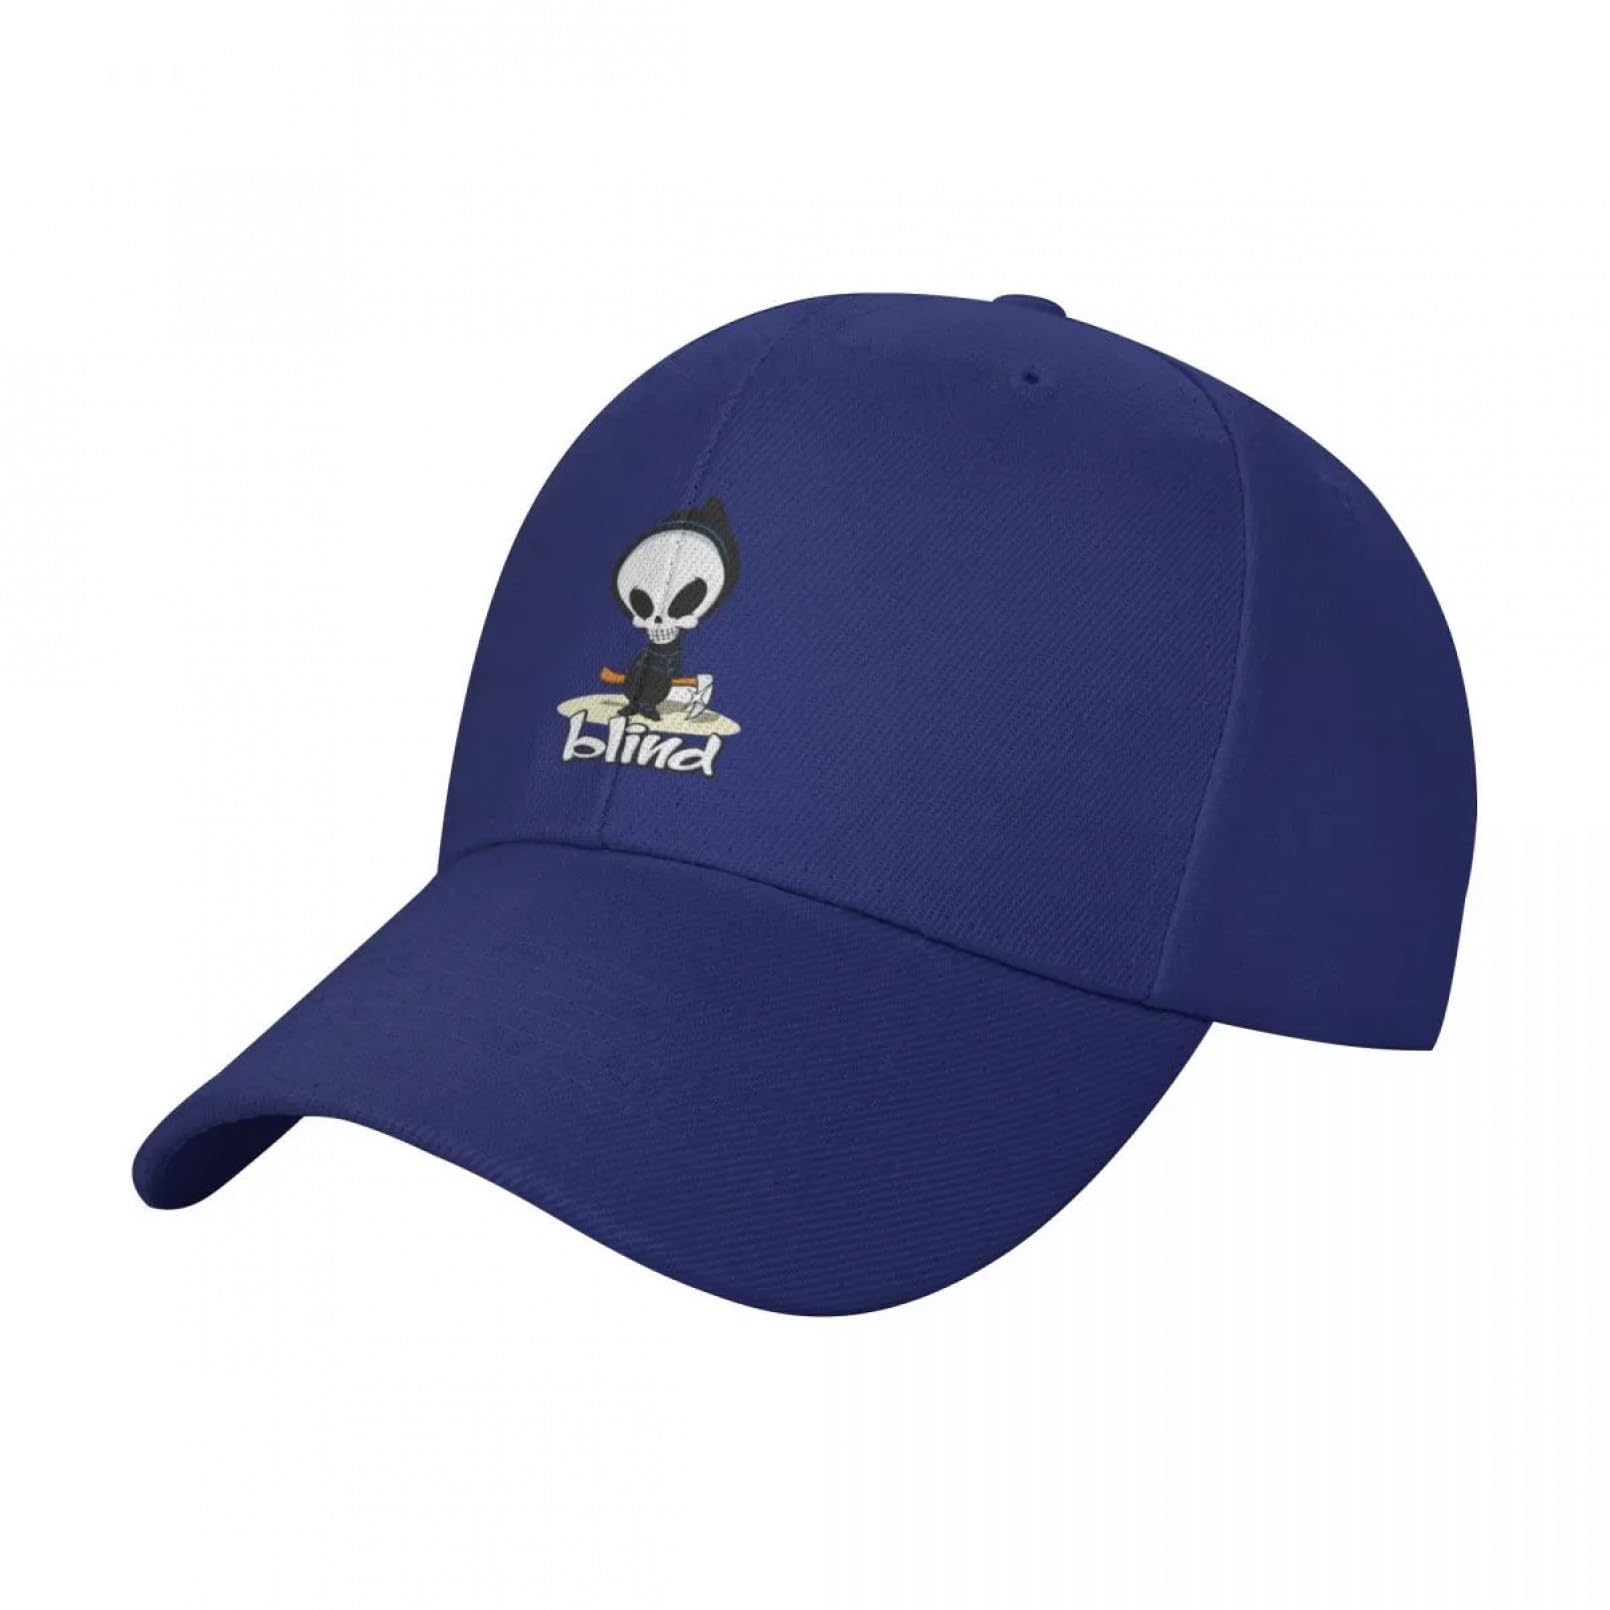 Basecap Blind Skateboards Merchandise Baseball Cap Beach Hat New In The Hat Luxury Man Hat Caps Women Men's Geschenk